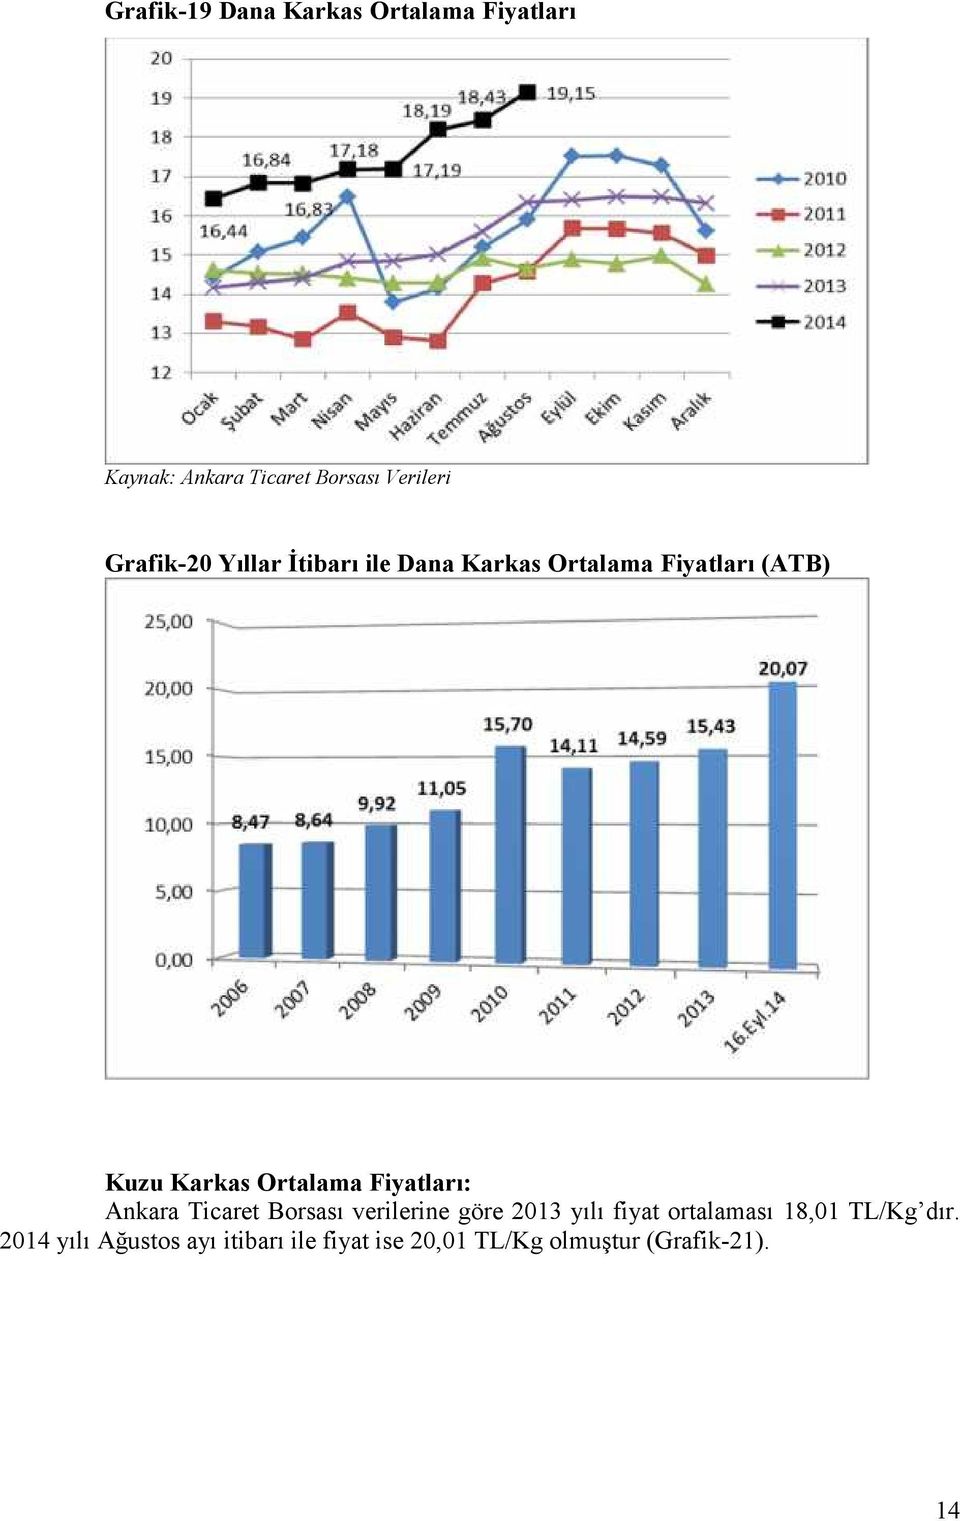 Ortalama Fiyatları: Ankara Ticaret Borsası verilerine göre 2013 yılı fiyat ortalaması